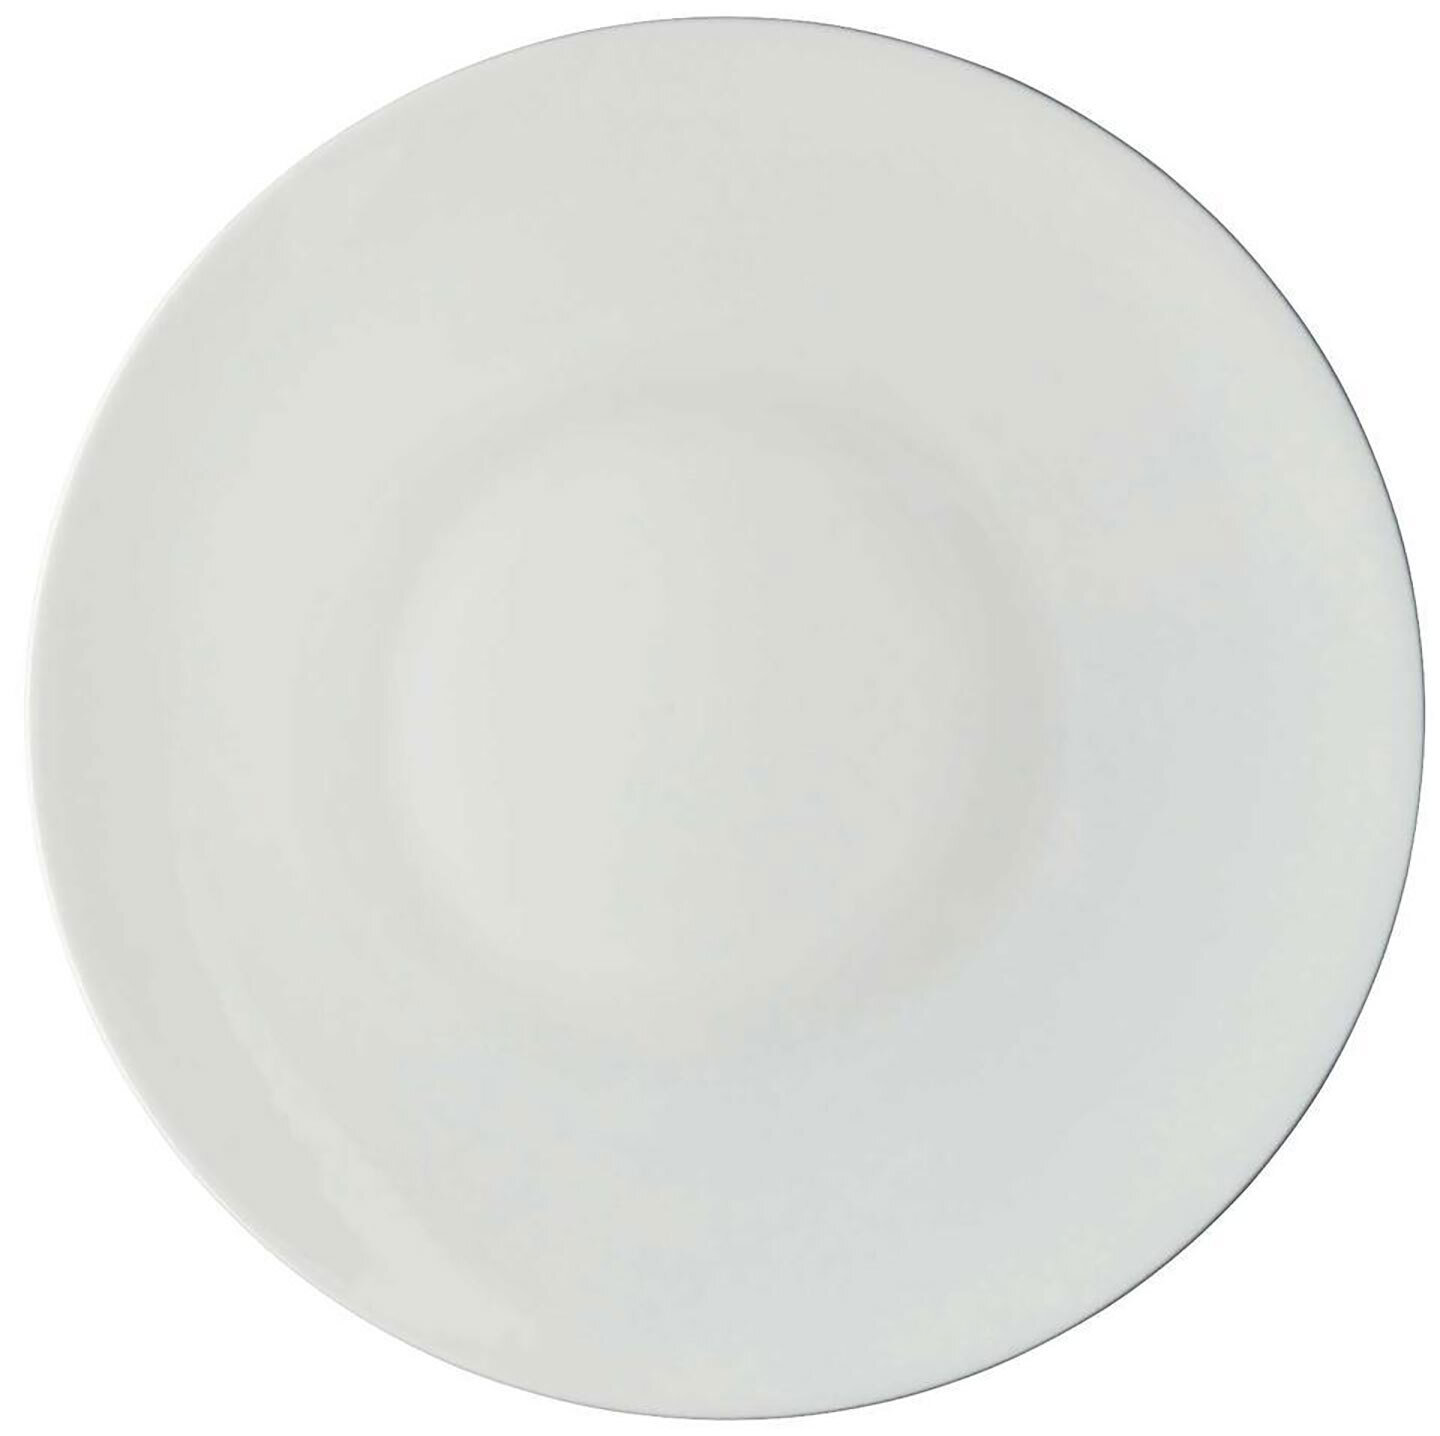 Raynaud Uni American Dinner Plate